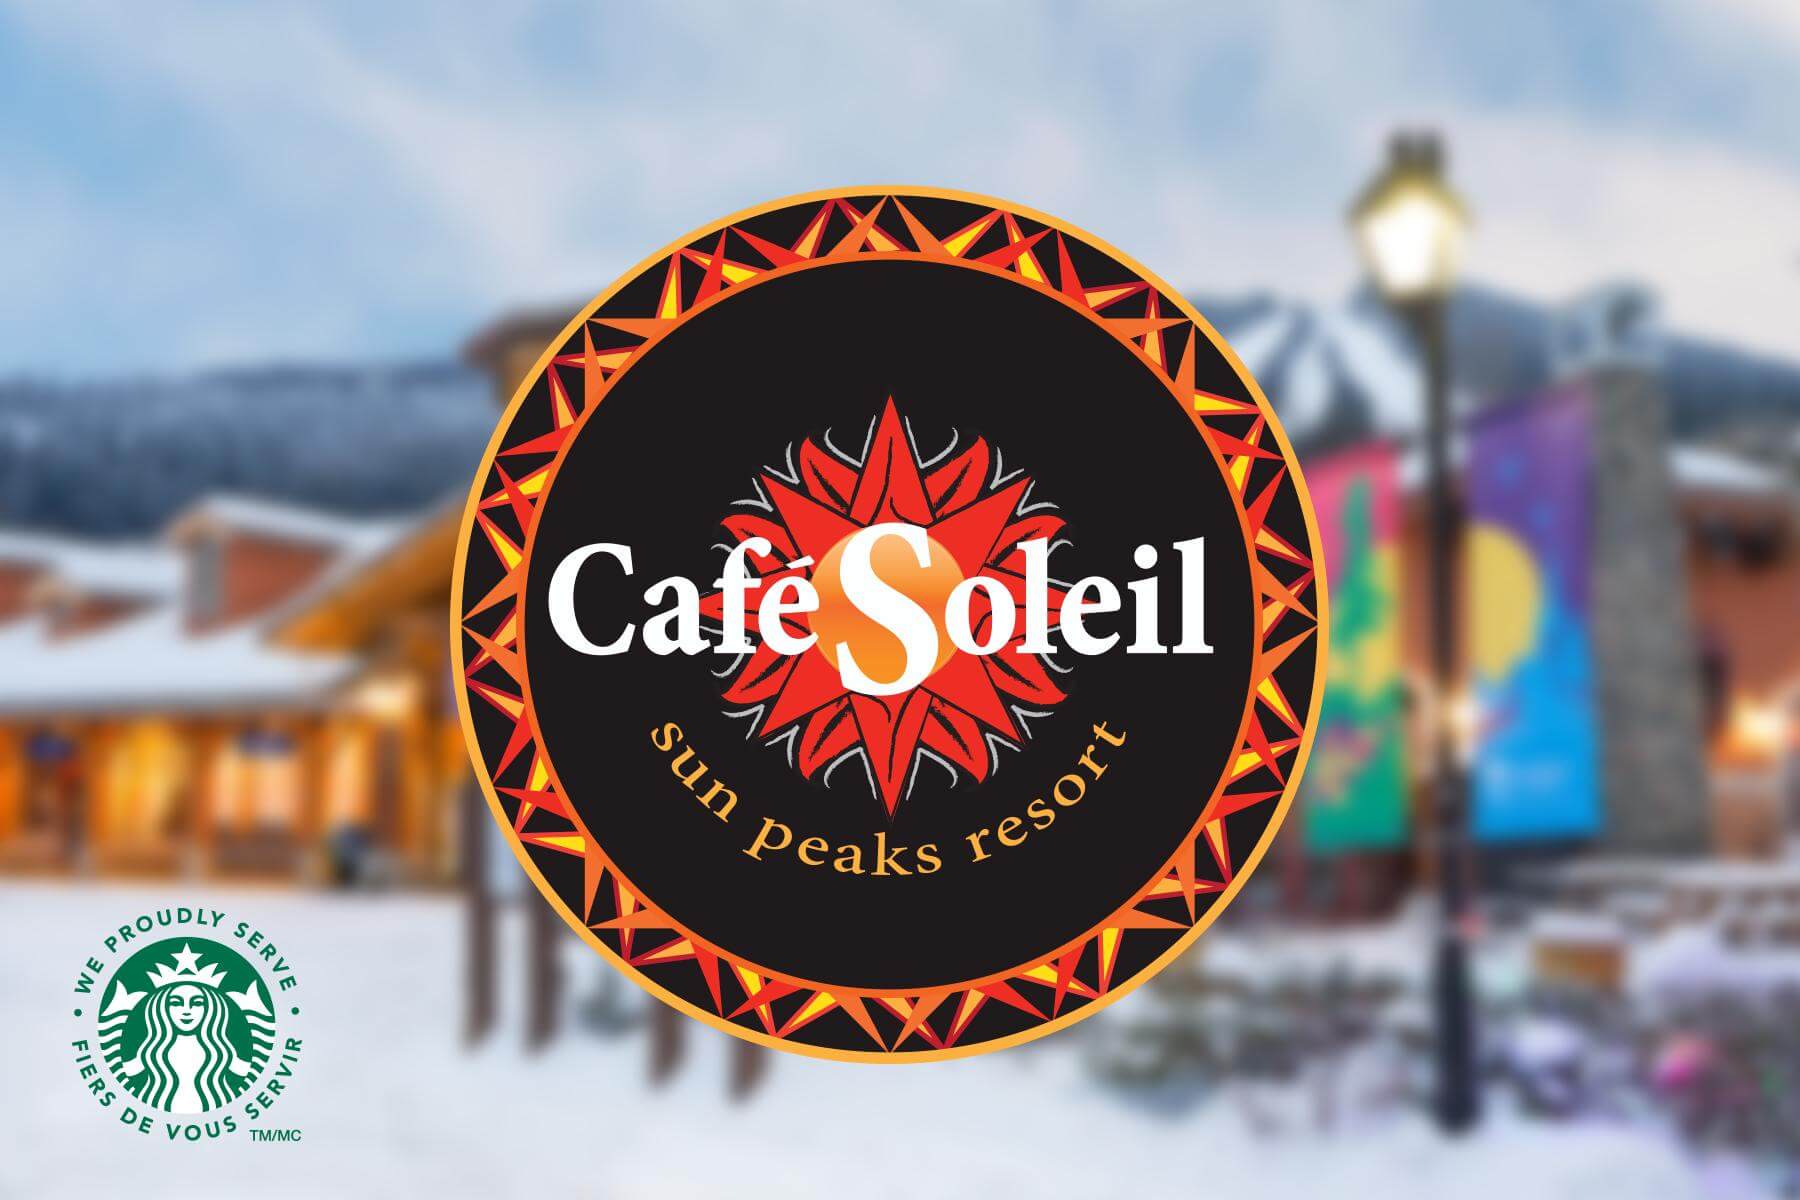 Cafe Soleil